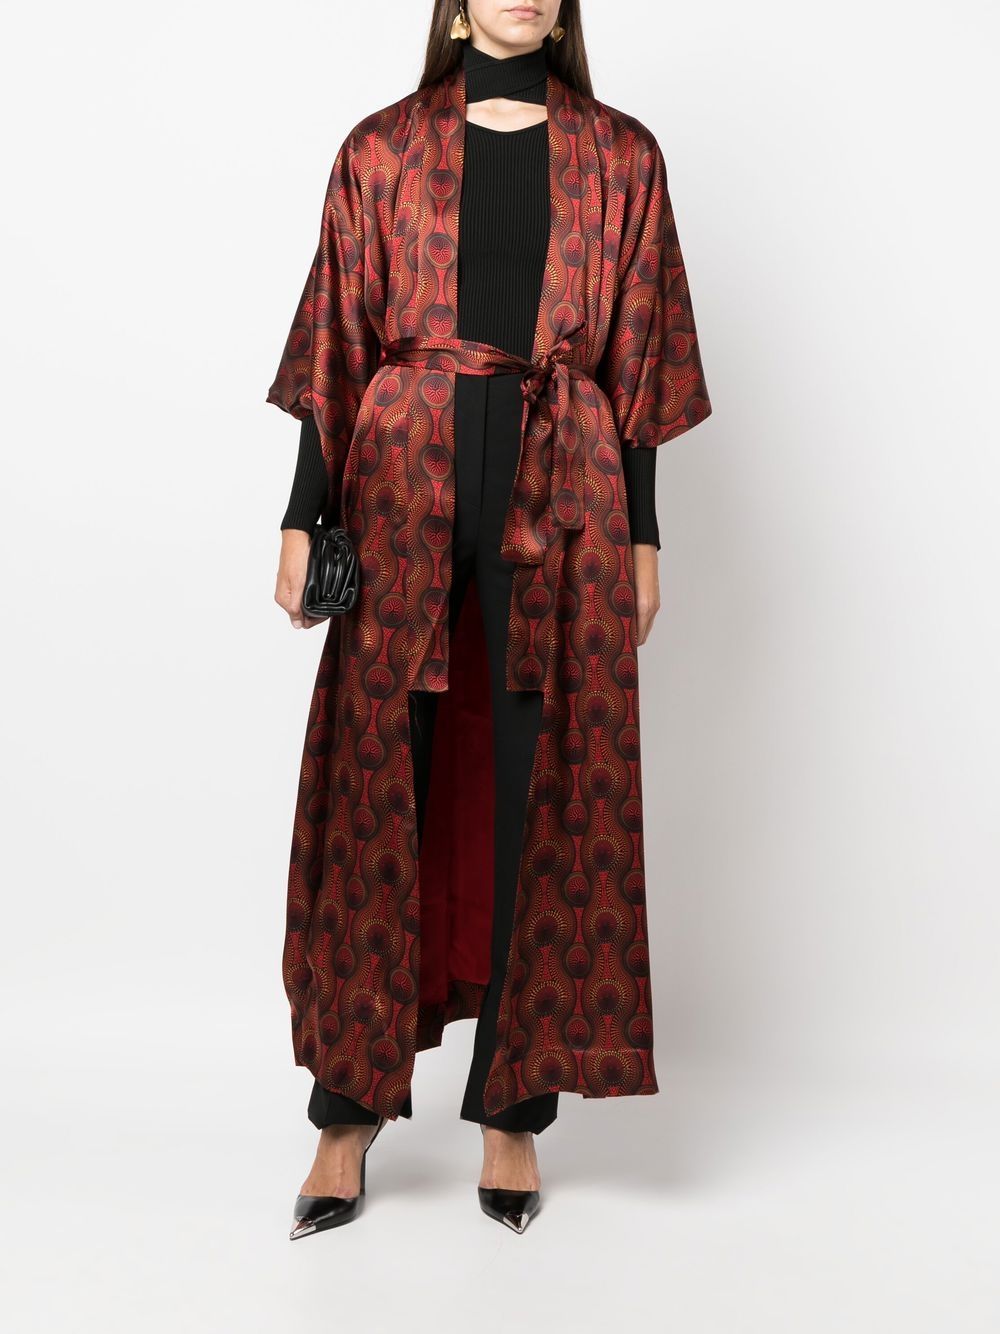 Ozwald boateng OZWALD BOATENG- Printed Silk Long Kimono